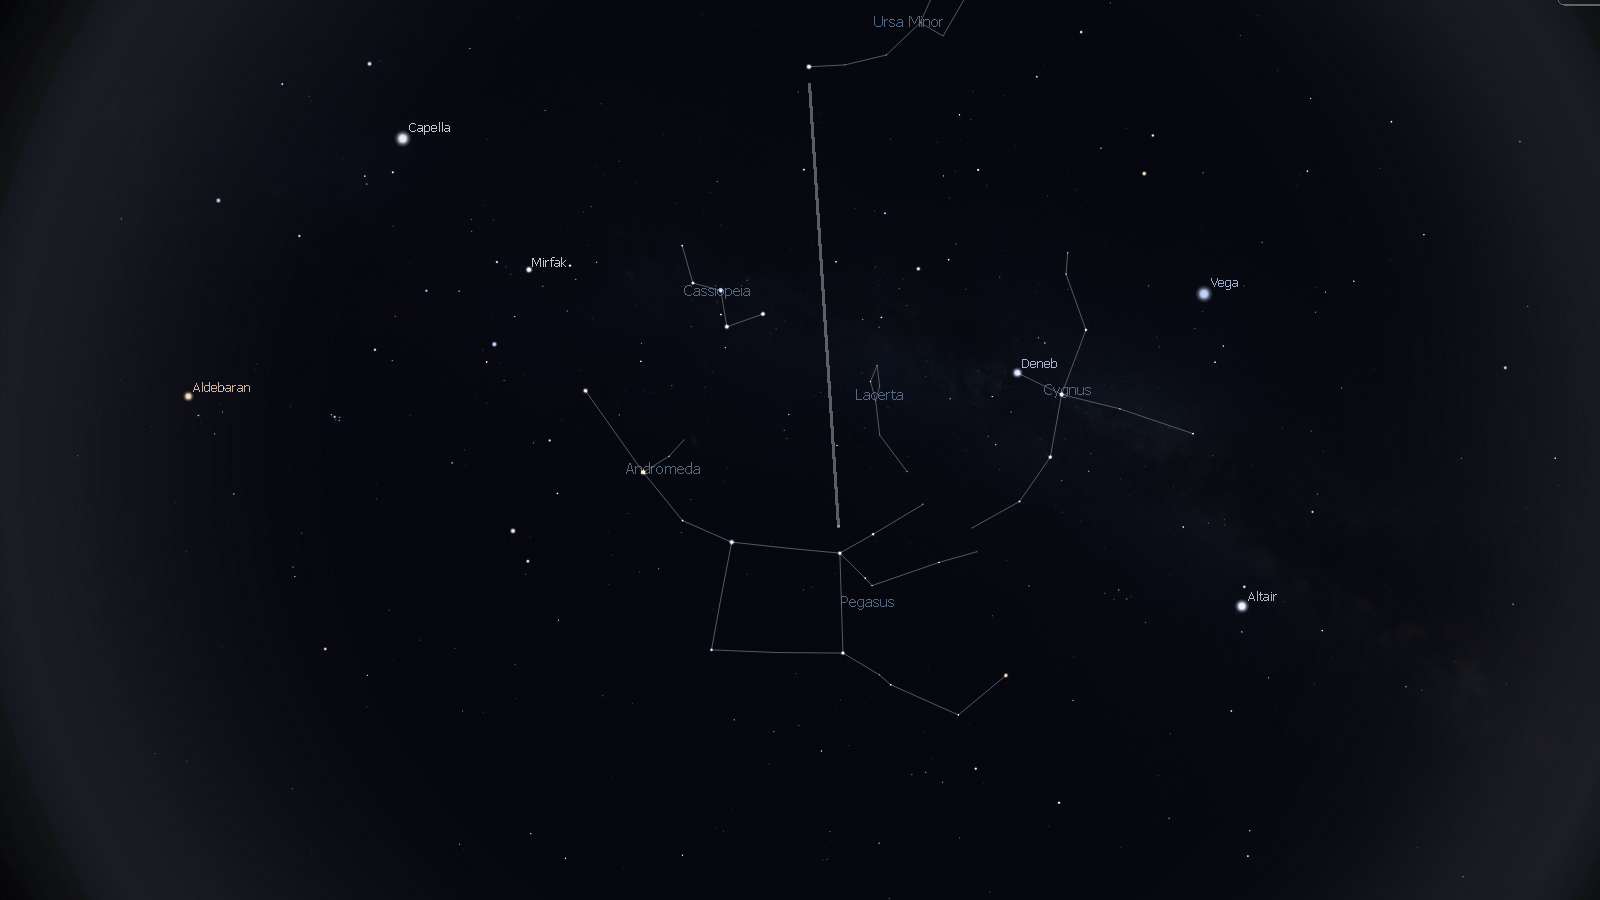 Pegasus stars point to Polaris